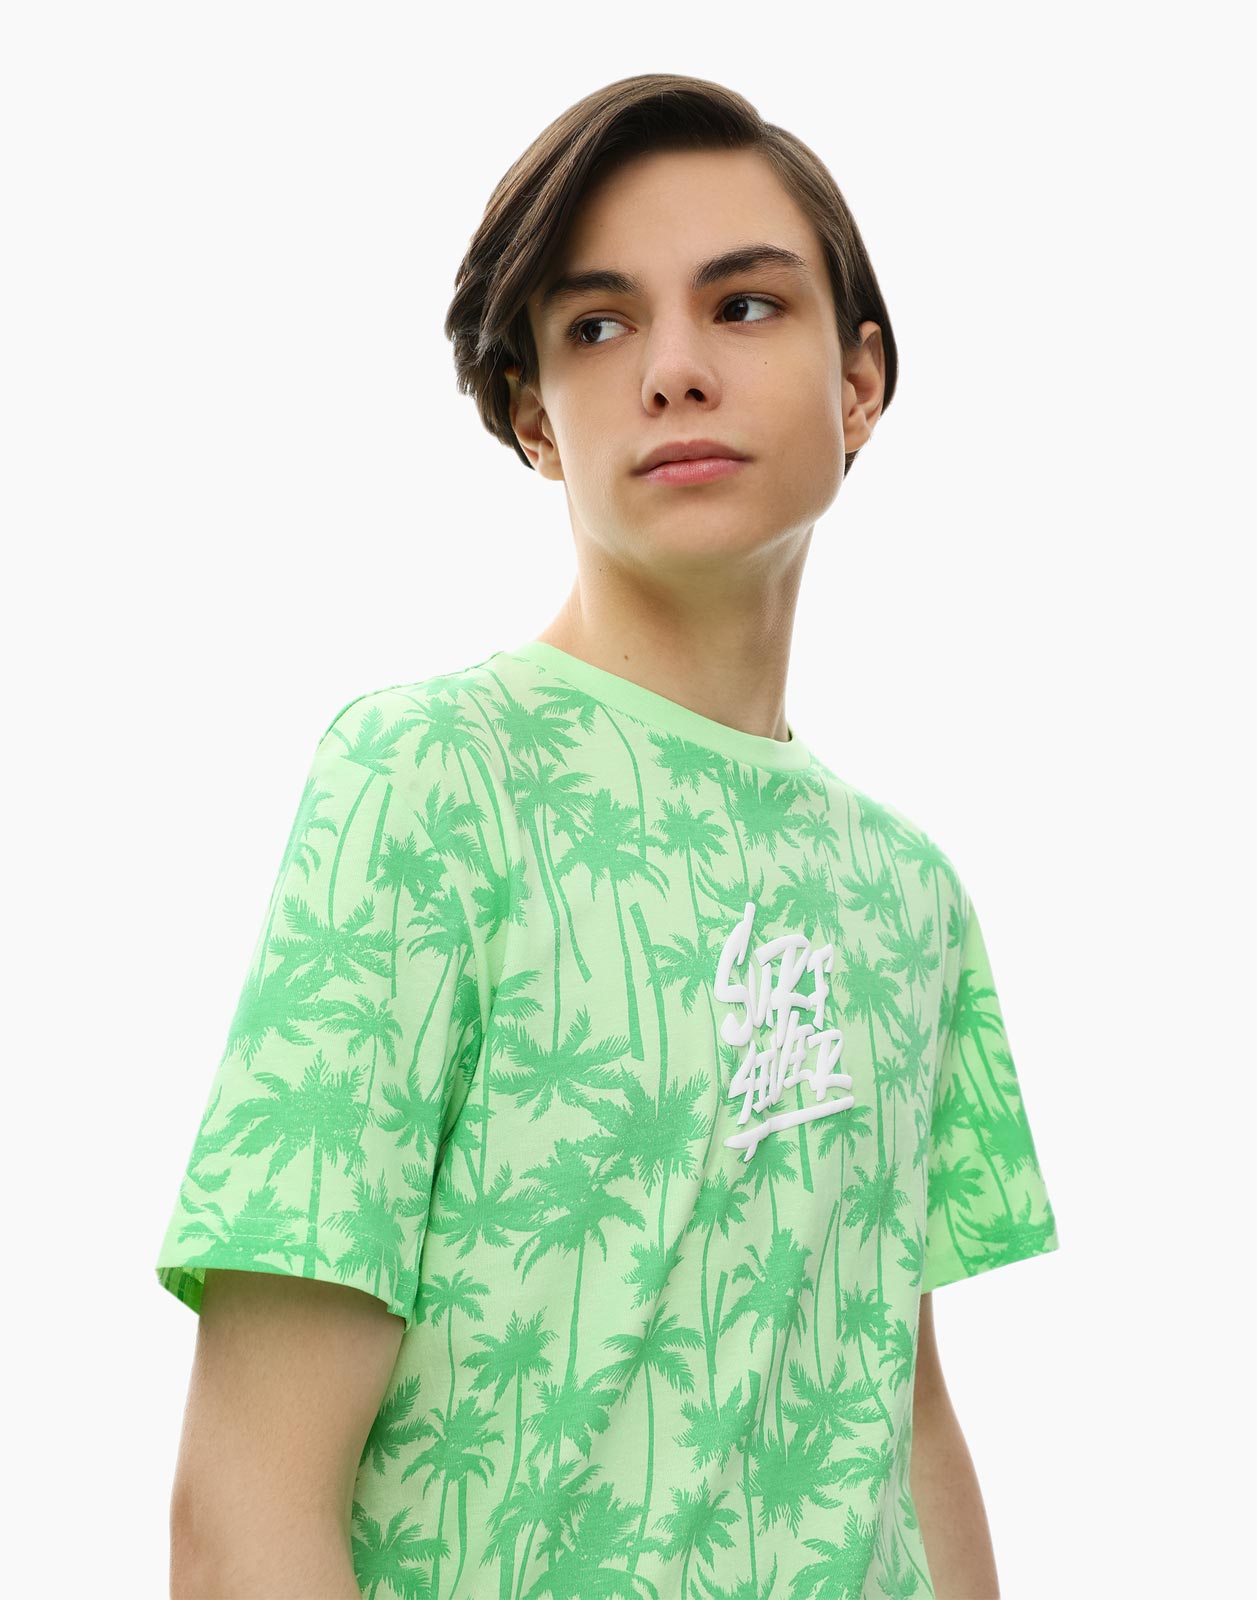 

Салатная футболка Standard с принтом для мальчика 14+/170, Зеленый, BKT012398